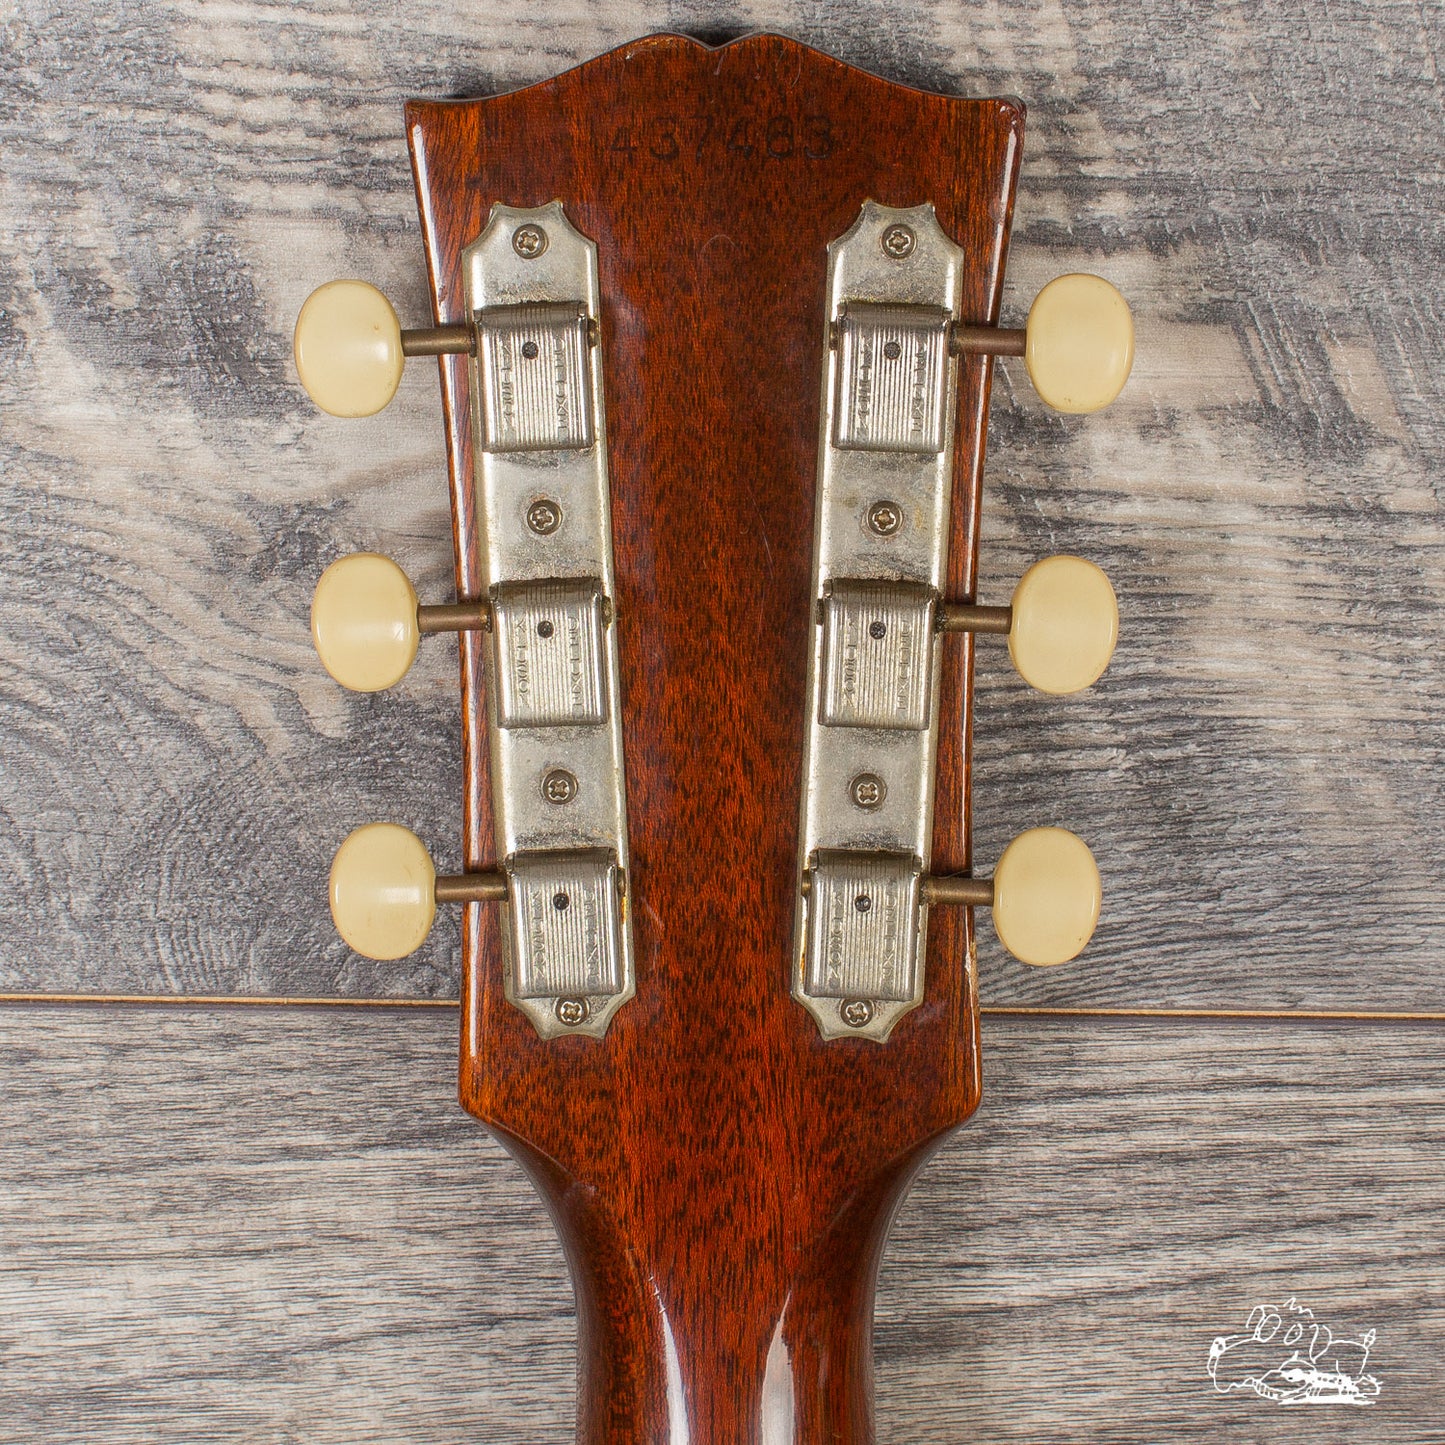 1965 Gibson ES-125T